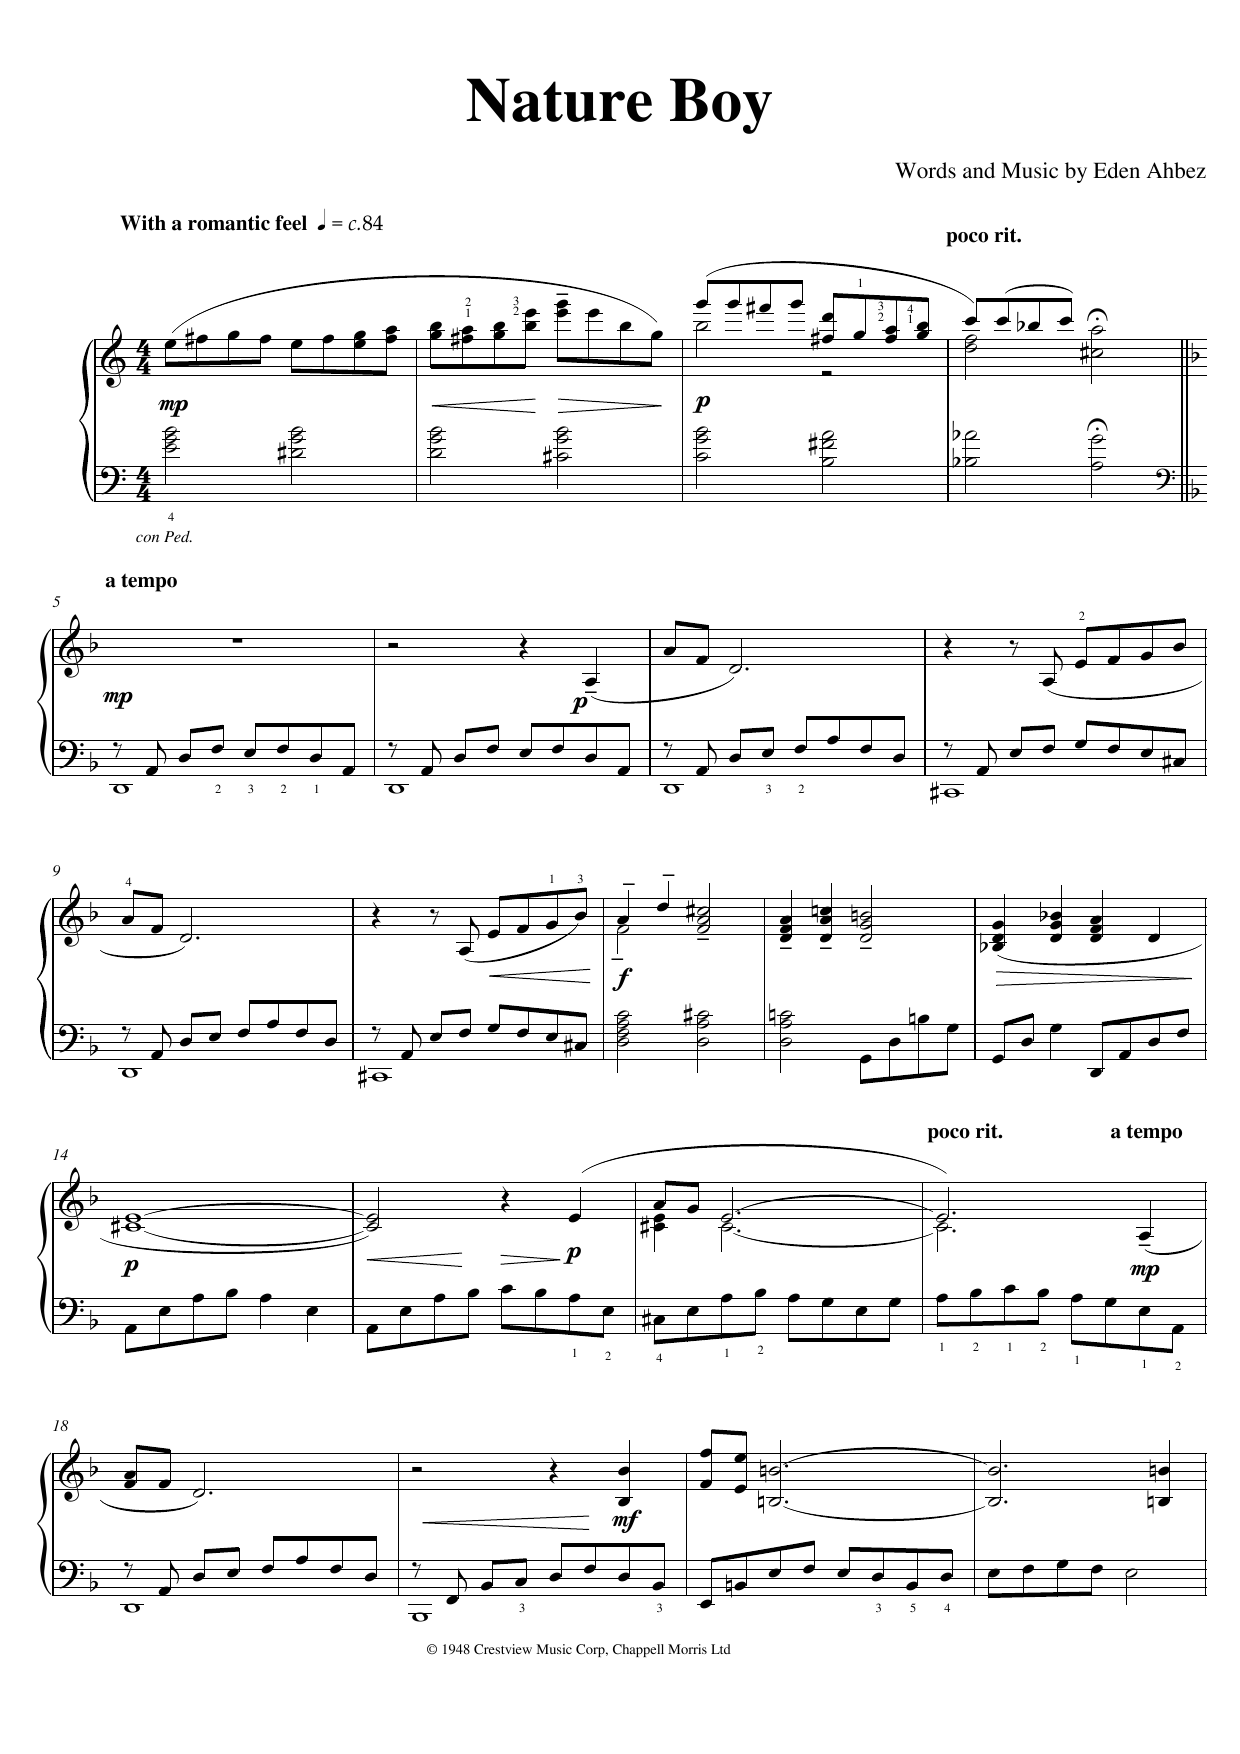 David Boy" Sheet Music PDF Notes, Chords | Jazz Score Solo Download SKU: 44590